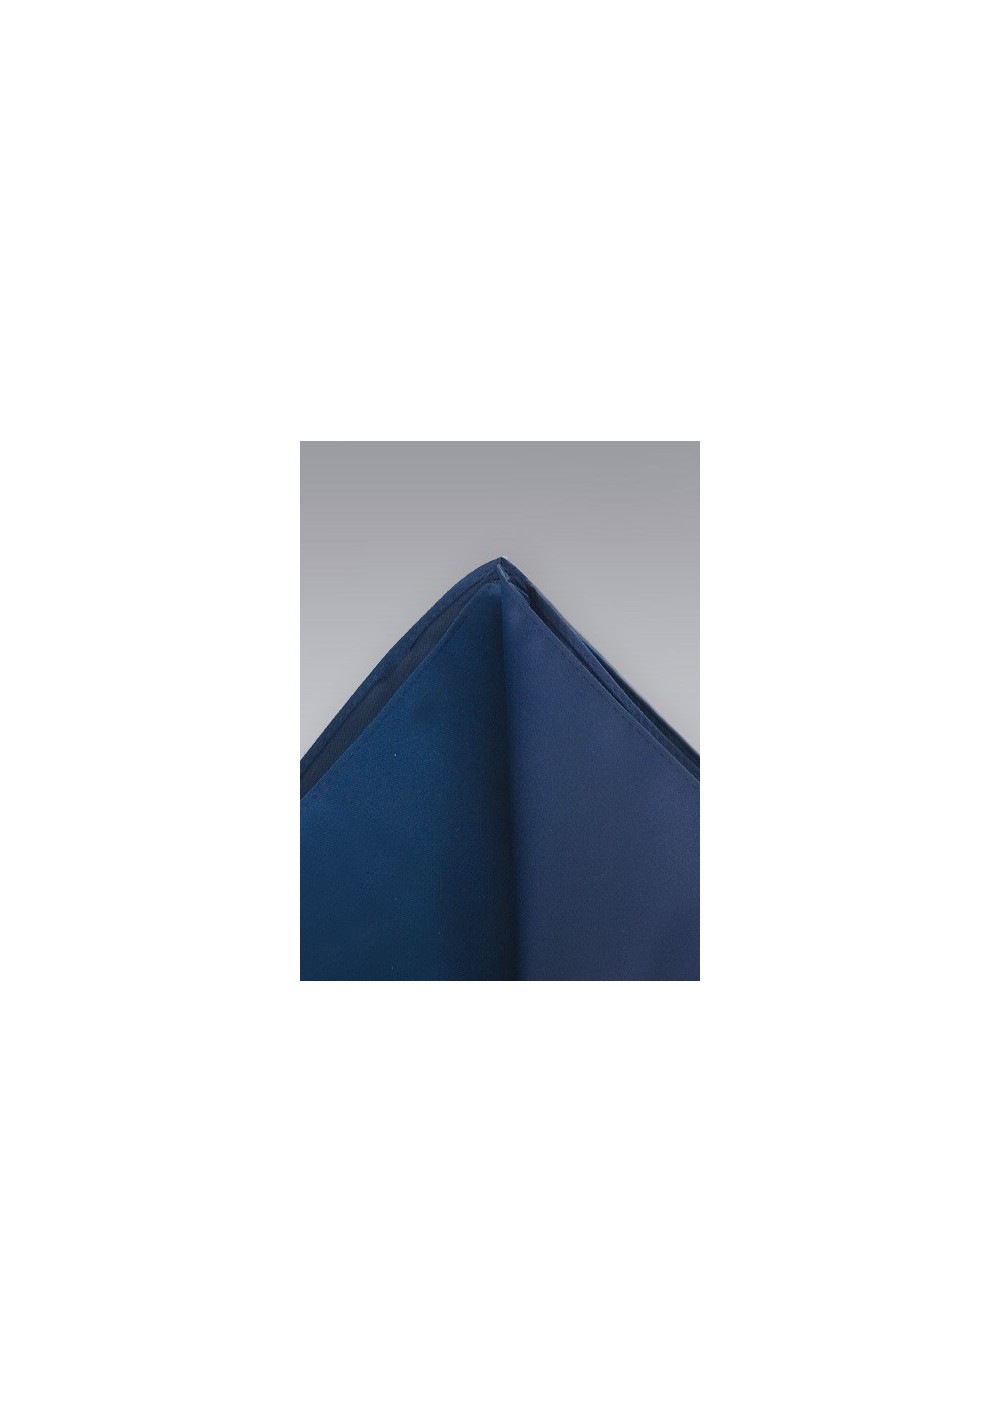 Pocket Squares - Solid color dark blue hankie